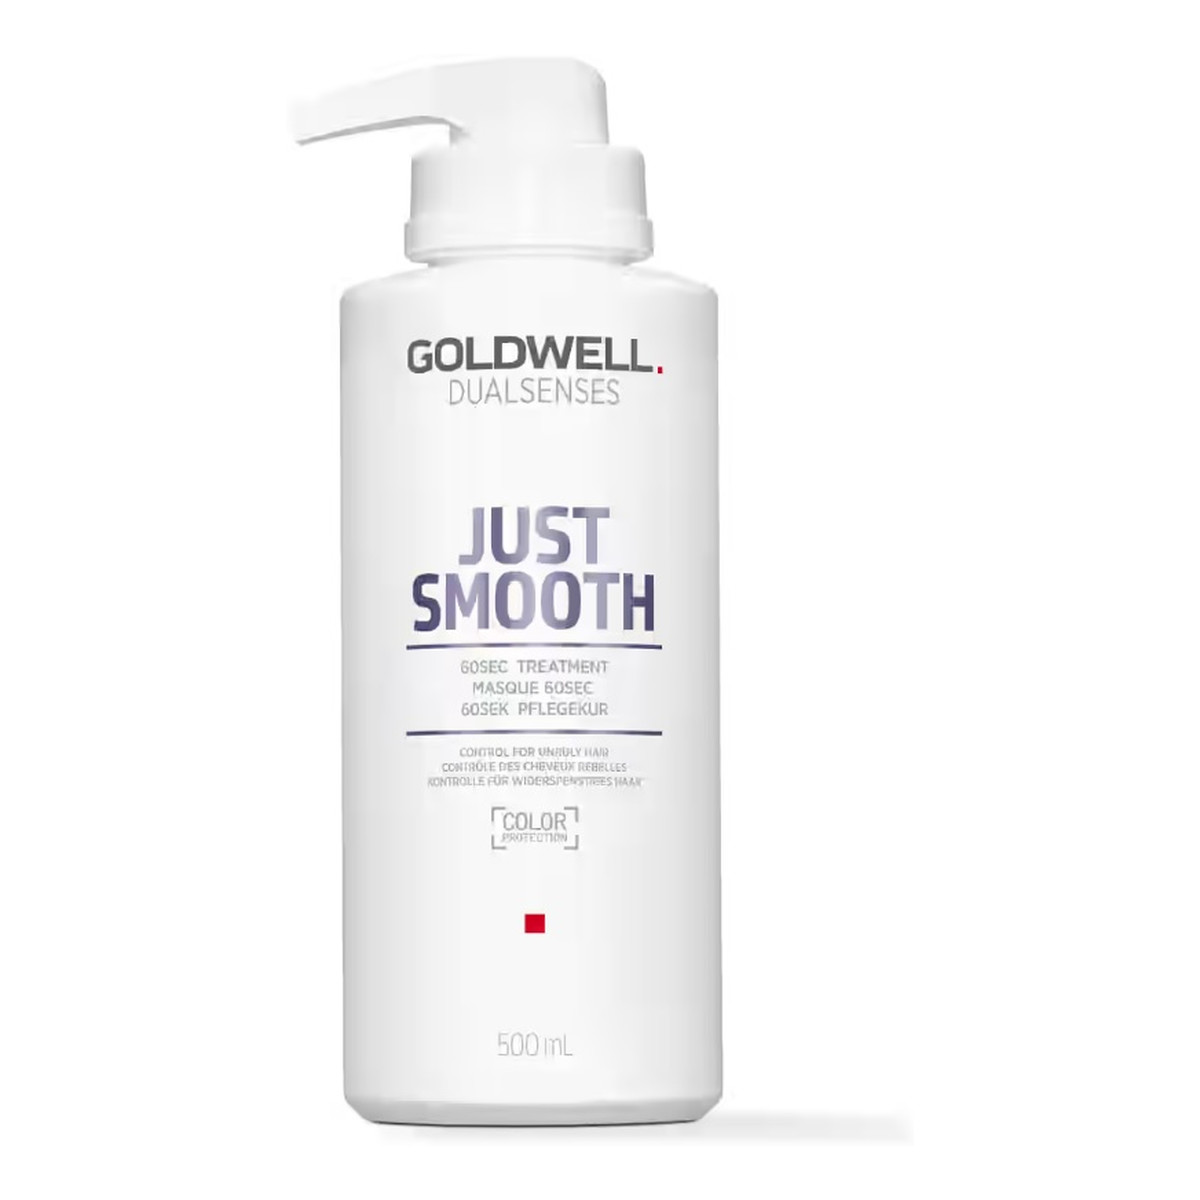 Goldwell Dualsenses just smooth 60sec treatment wygładzająca kuracja do włosów 500ml